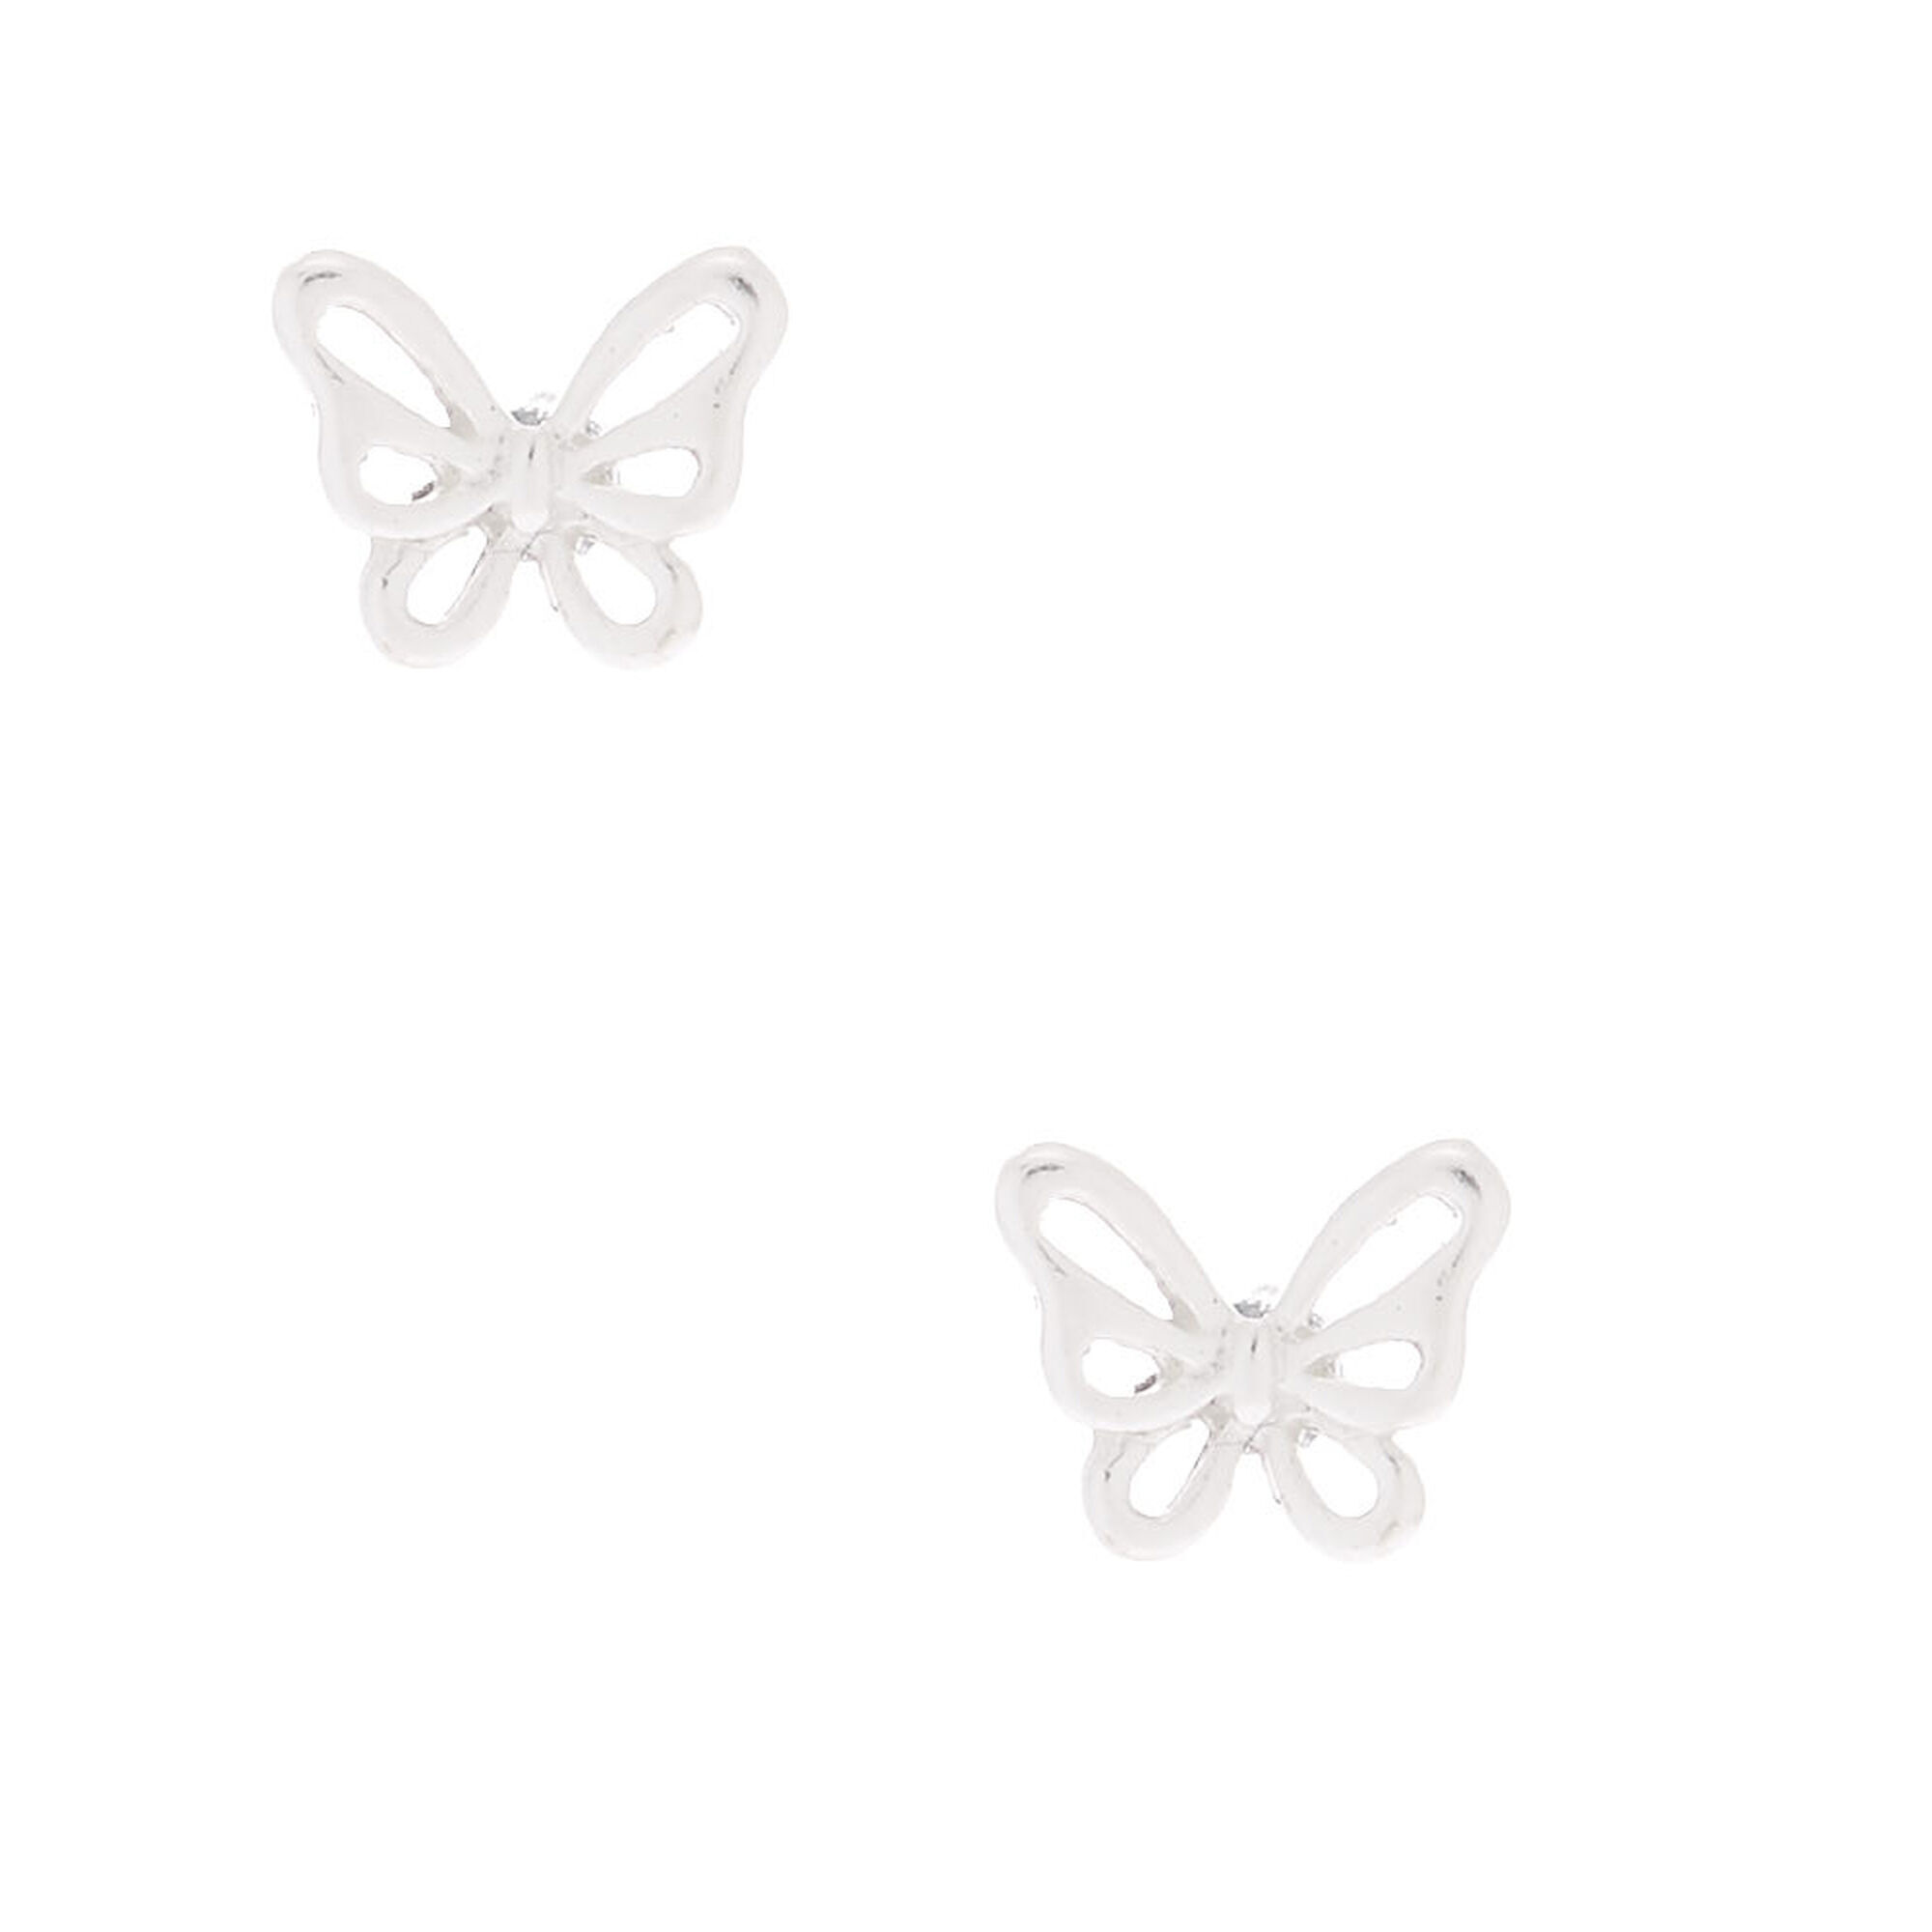 Butterflies in Silver -Bracelet